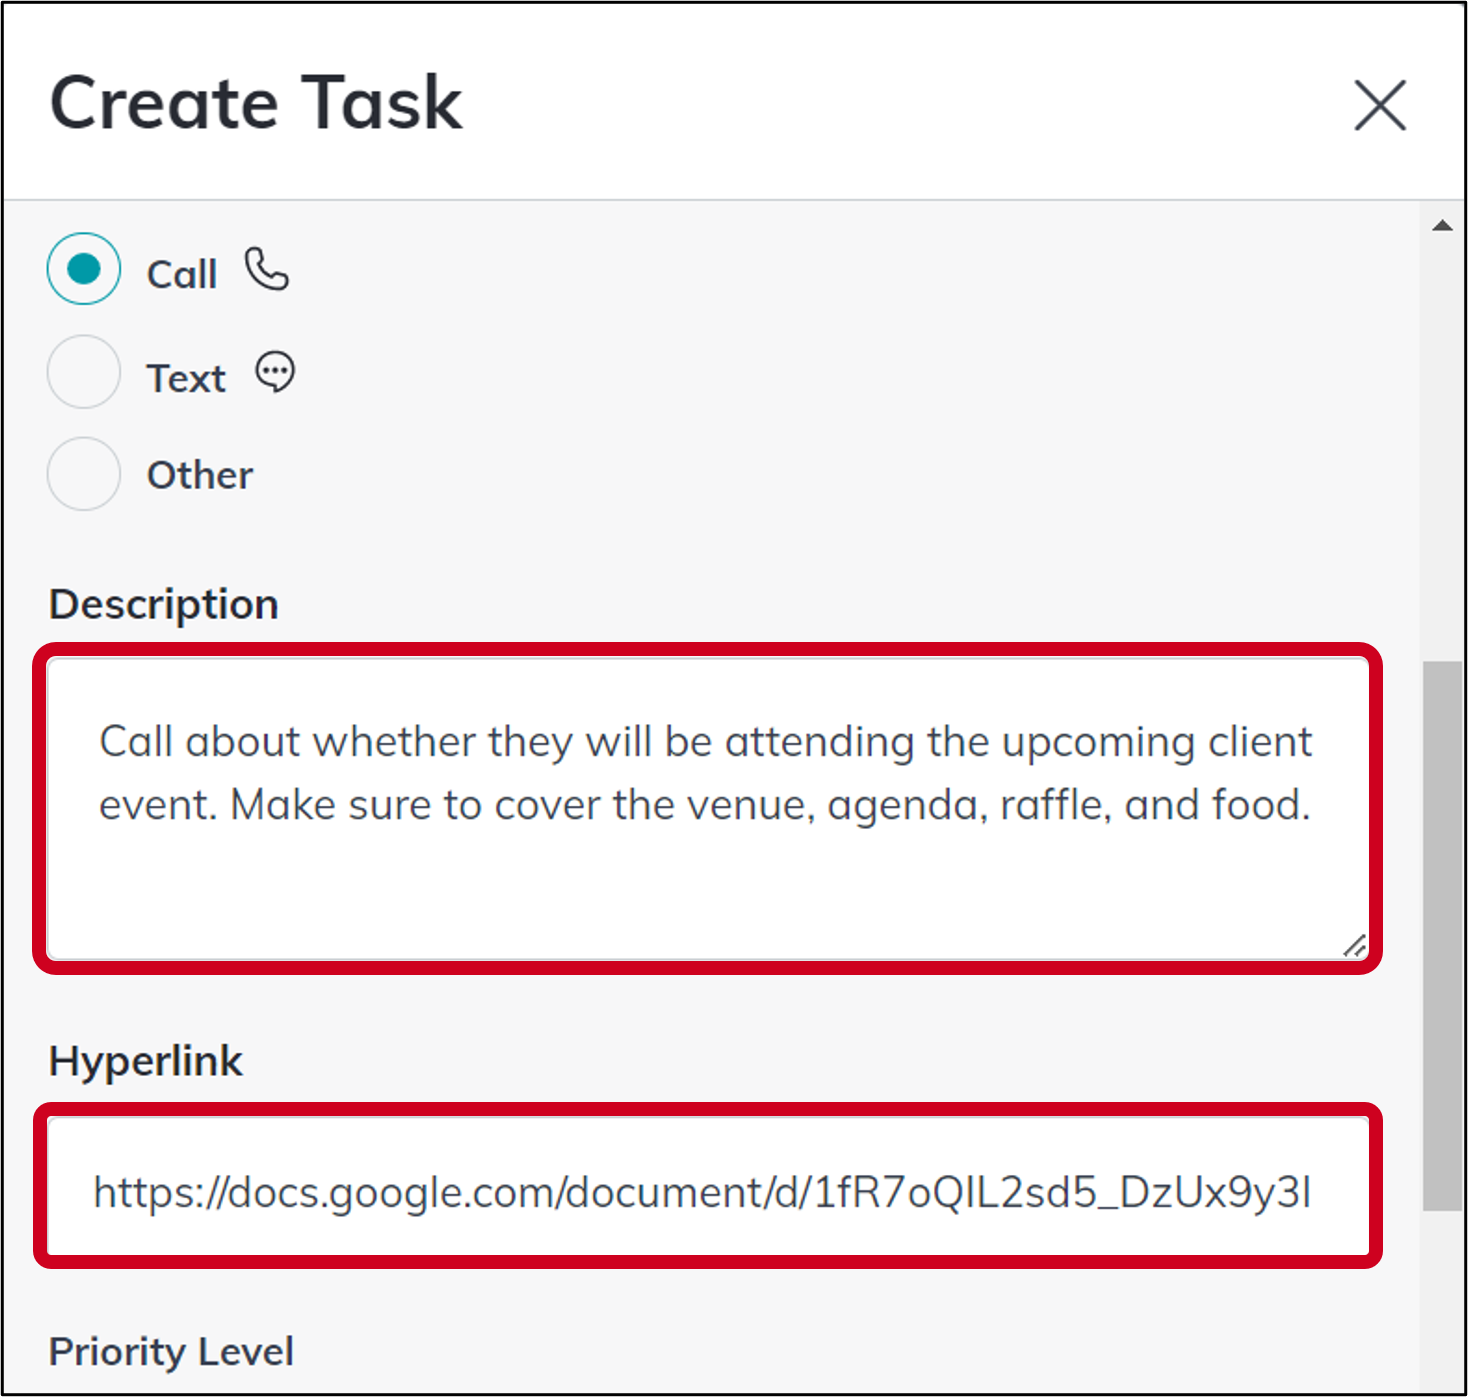 tasks_create_description_and_hyperlink.png